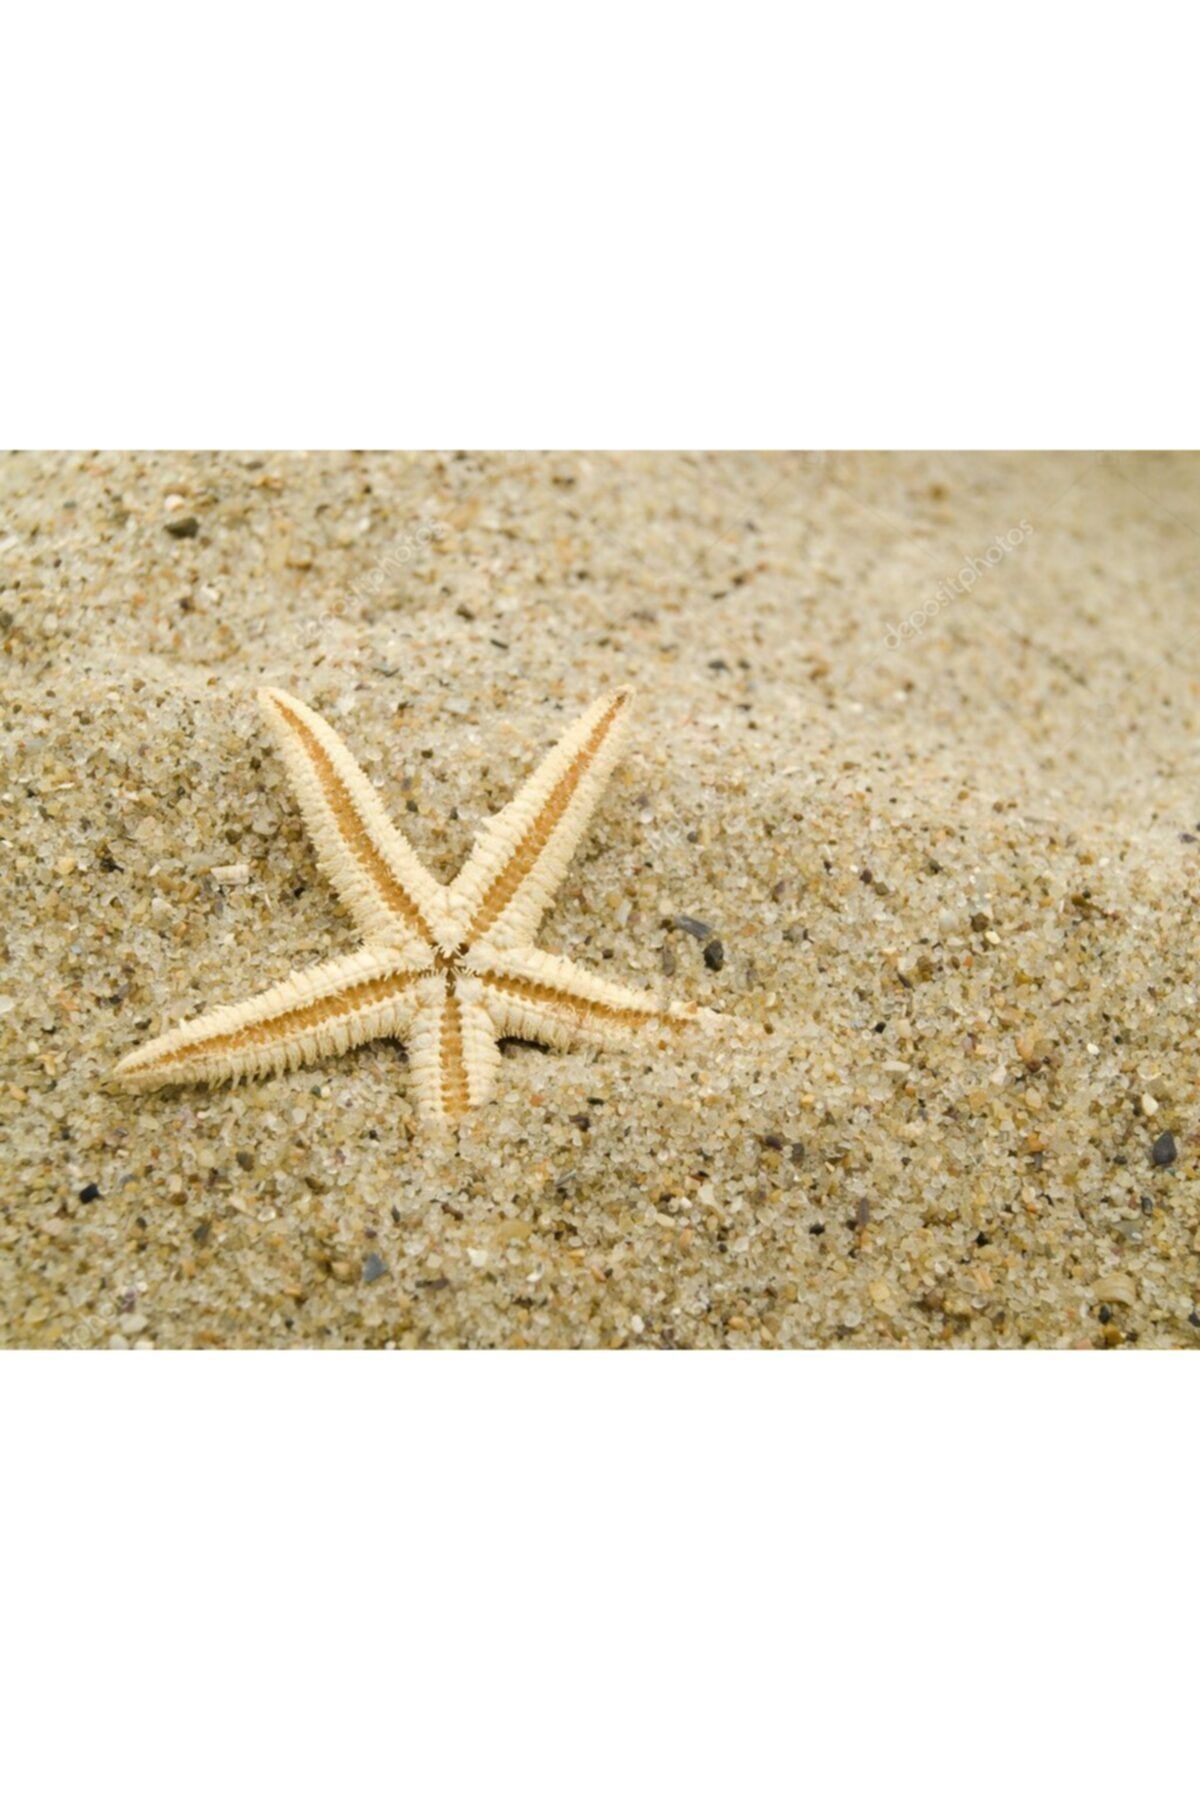 Aker Hediyelik Natürel Deniz Yıldızı 20 Adet 1,5x3,5cm Özel Deniz Yıldızları Bebek Şekeri Süsleme Malzemeleri